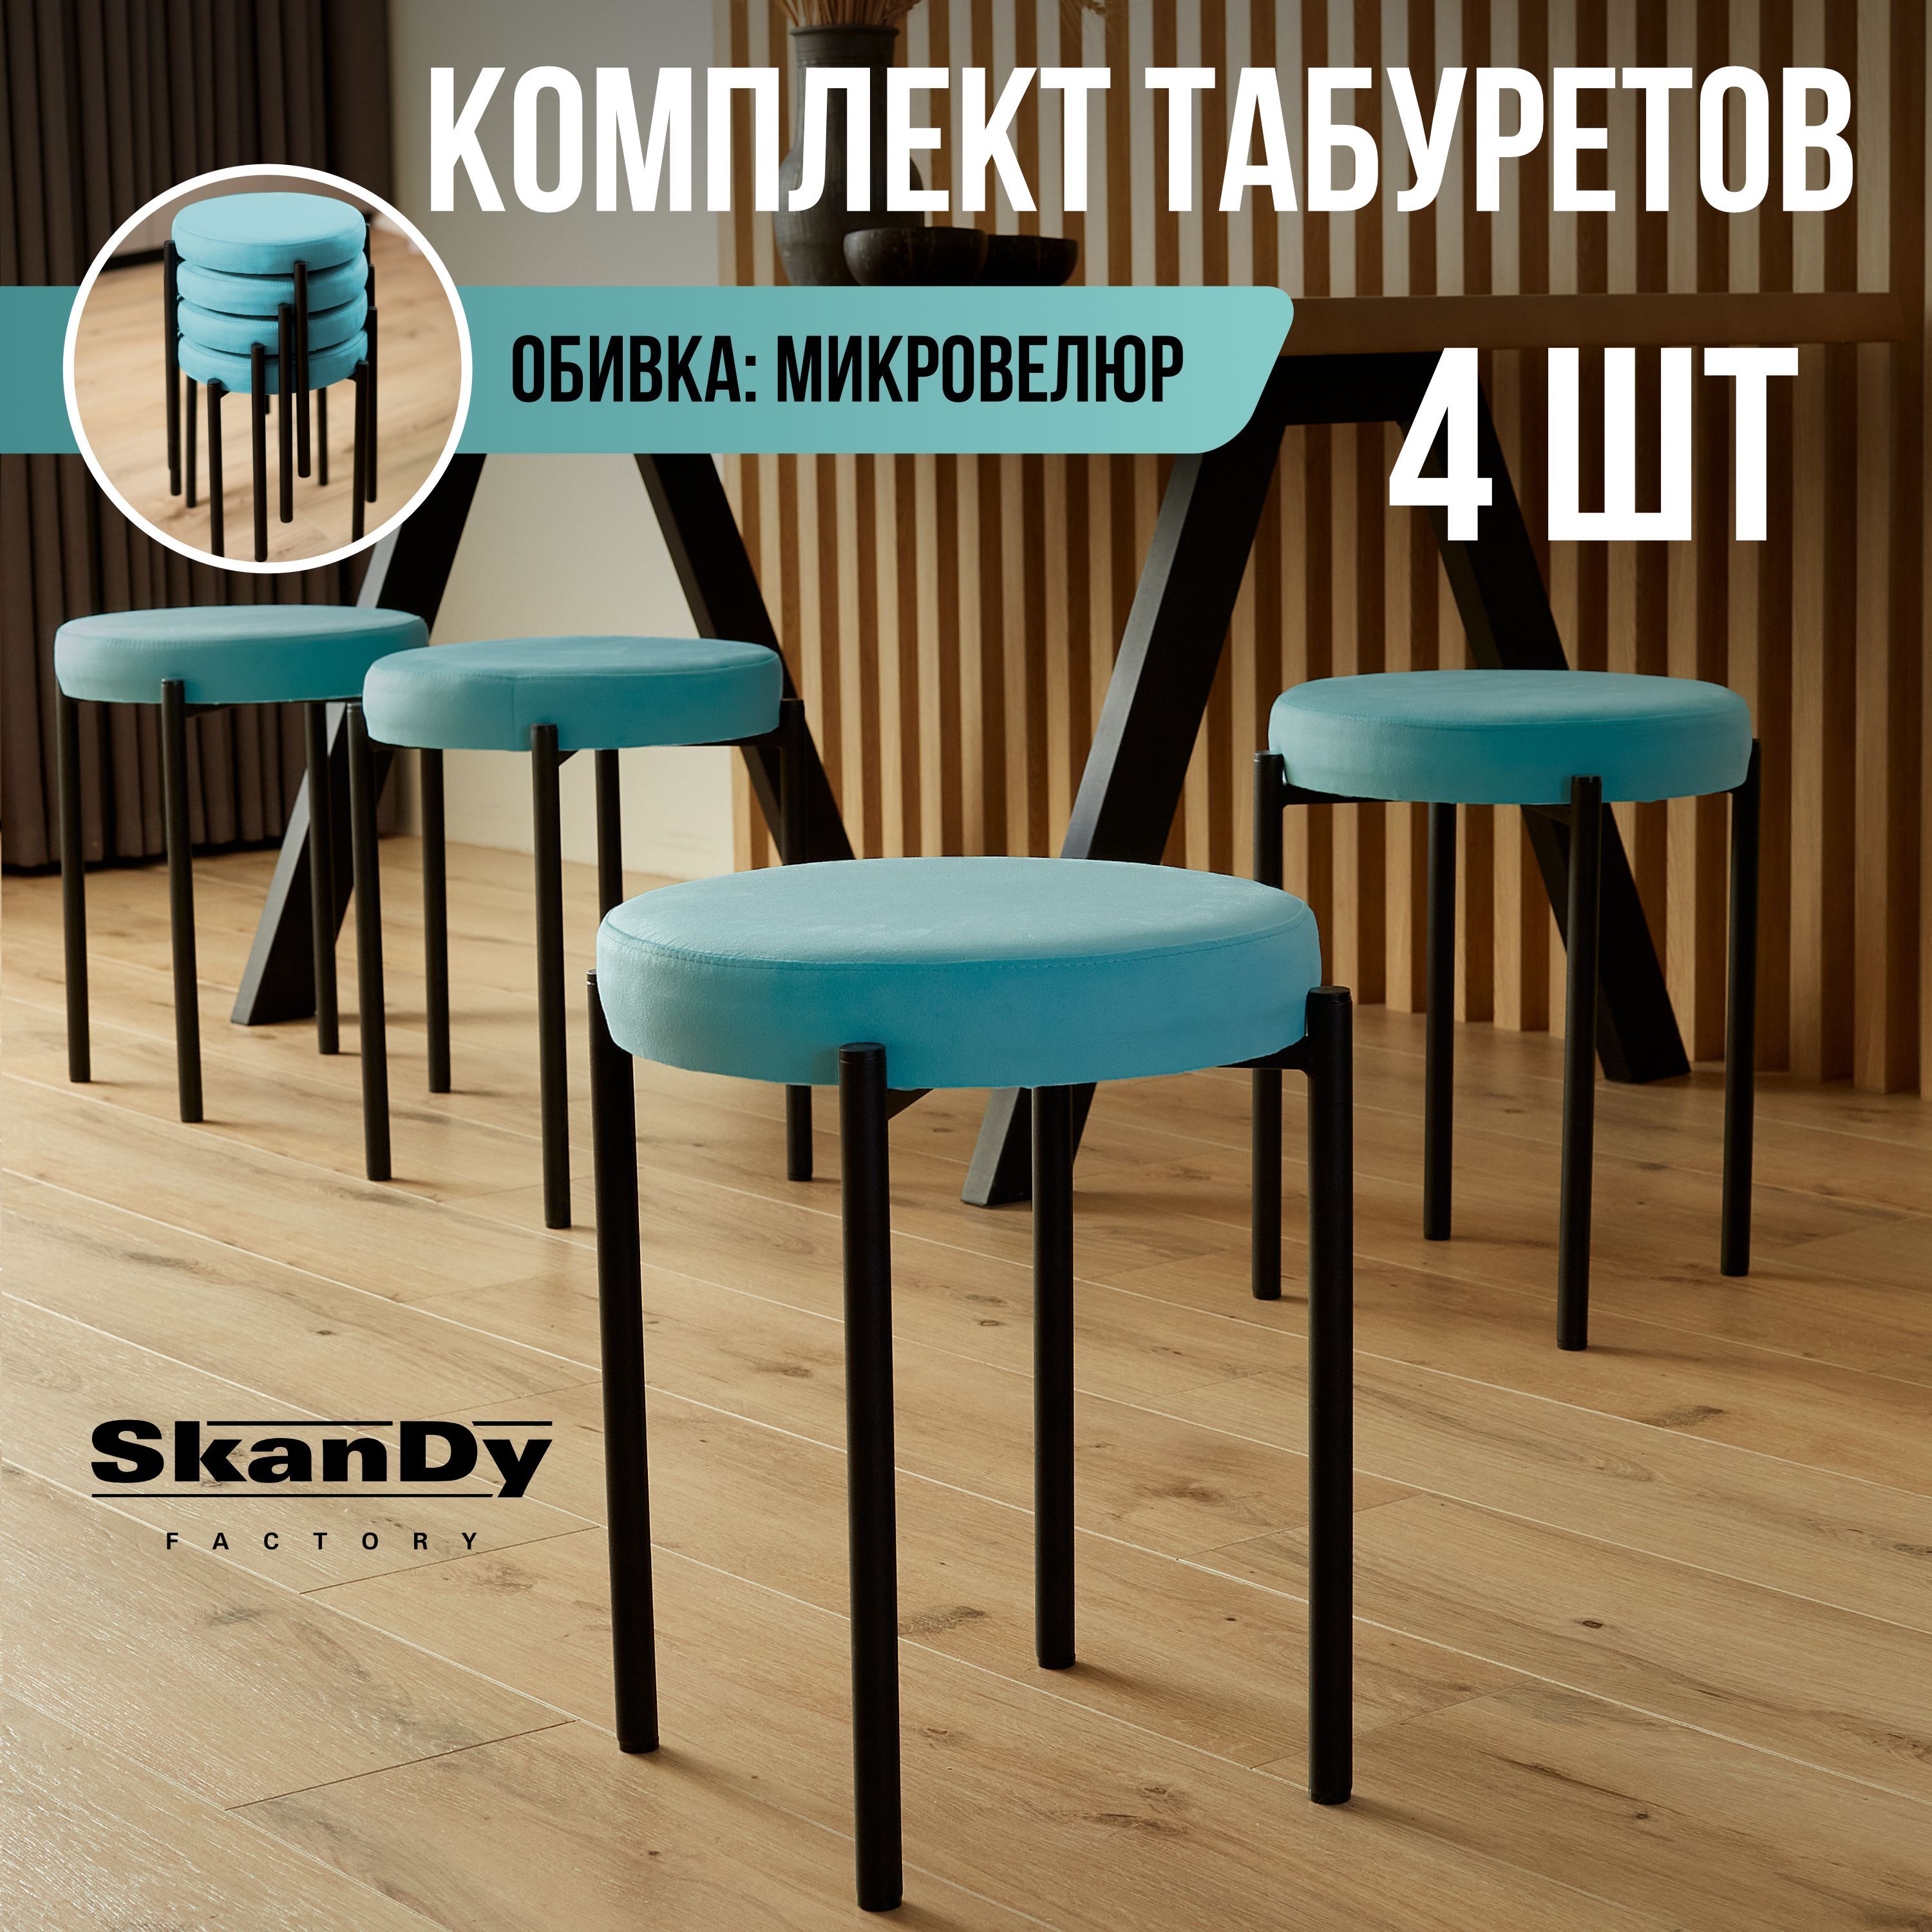 Мягкий табурет для кухни SkanDy Factory, 4 шт, голубой